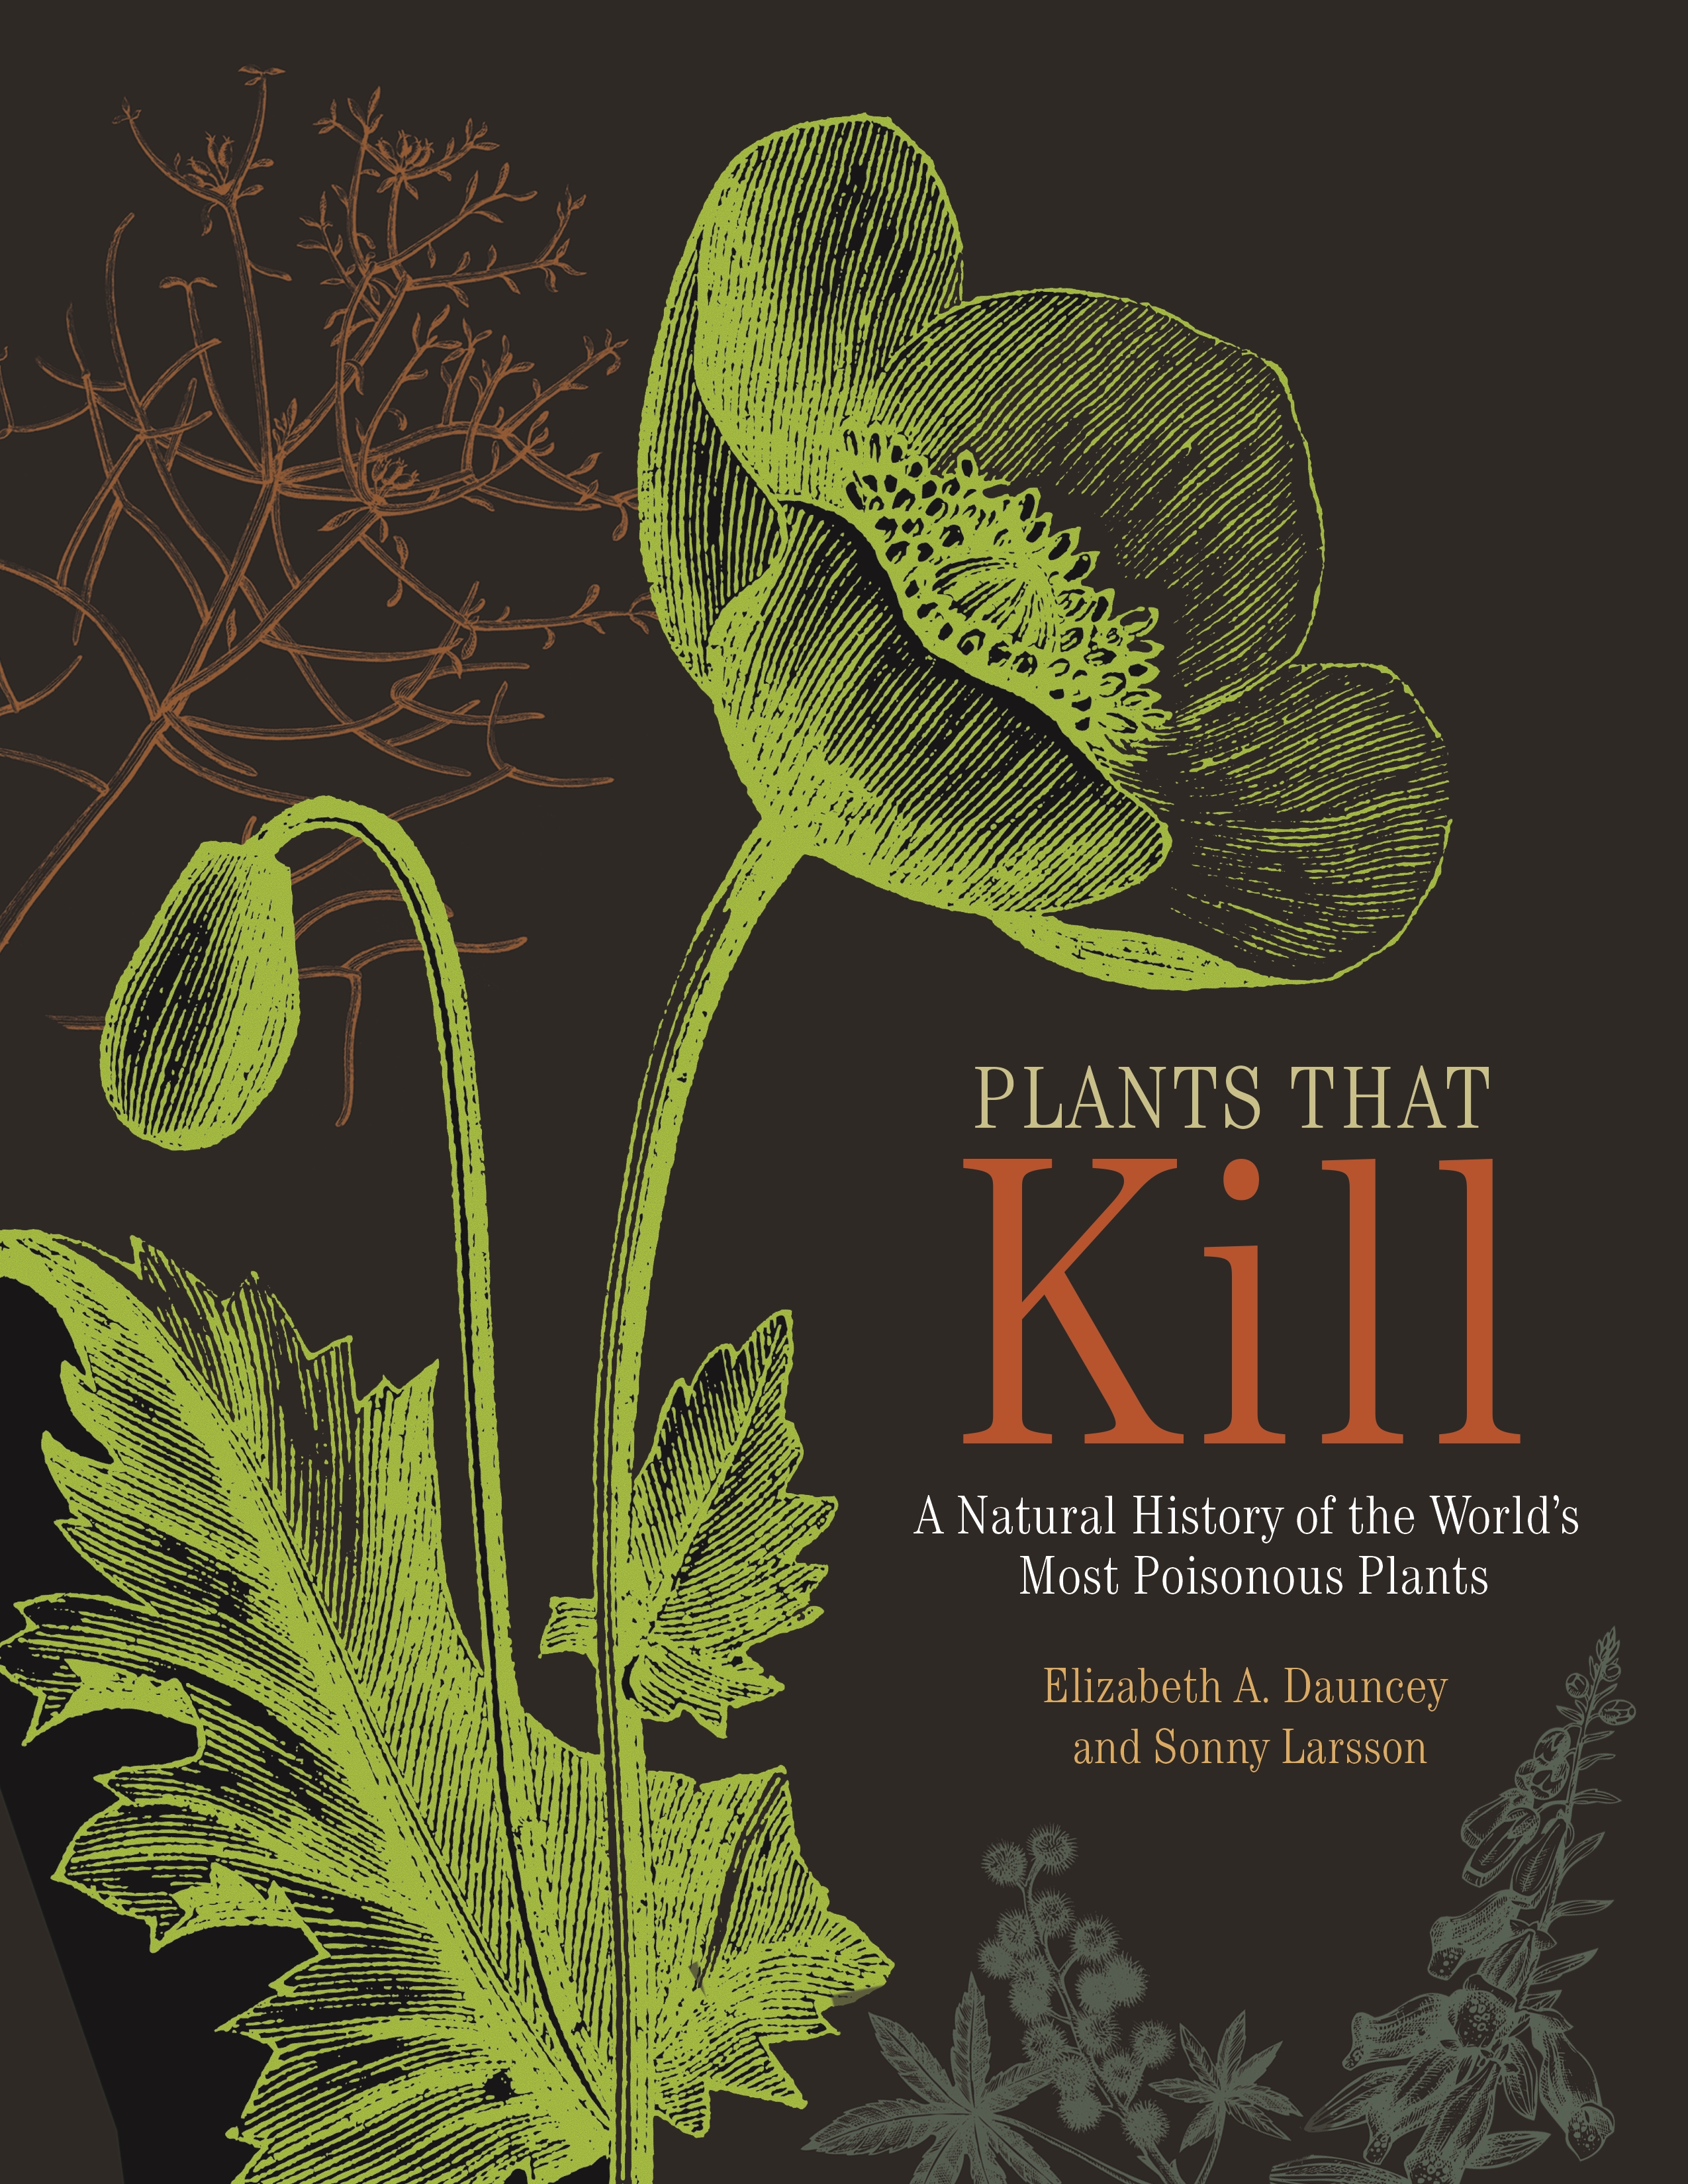 Poisonous Plants Ebook Read Online Quran Pdf